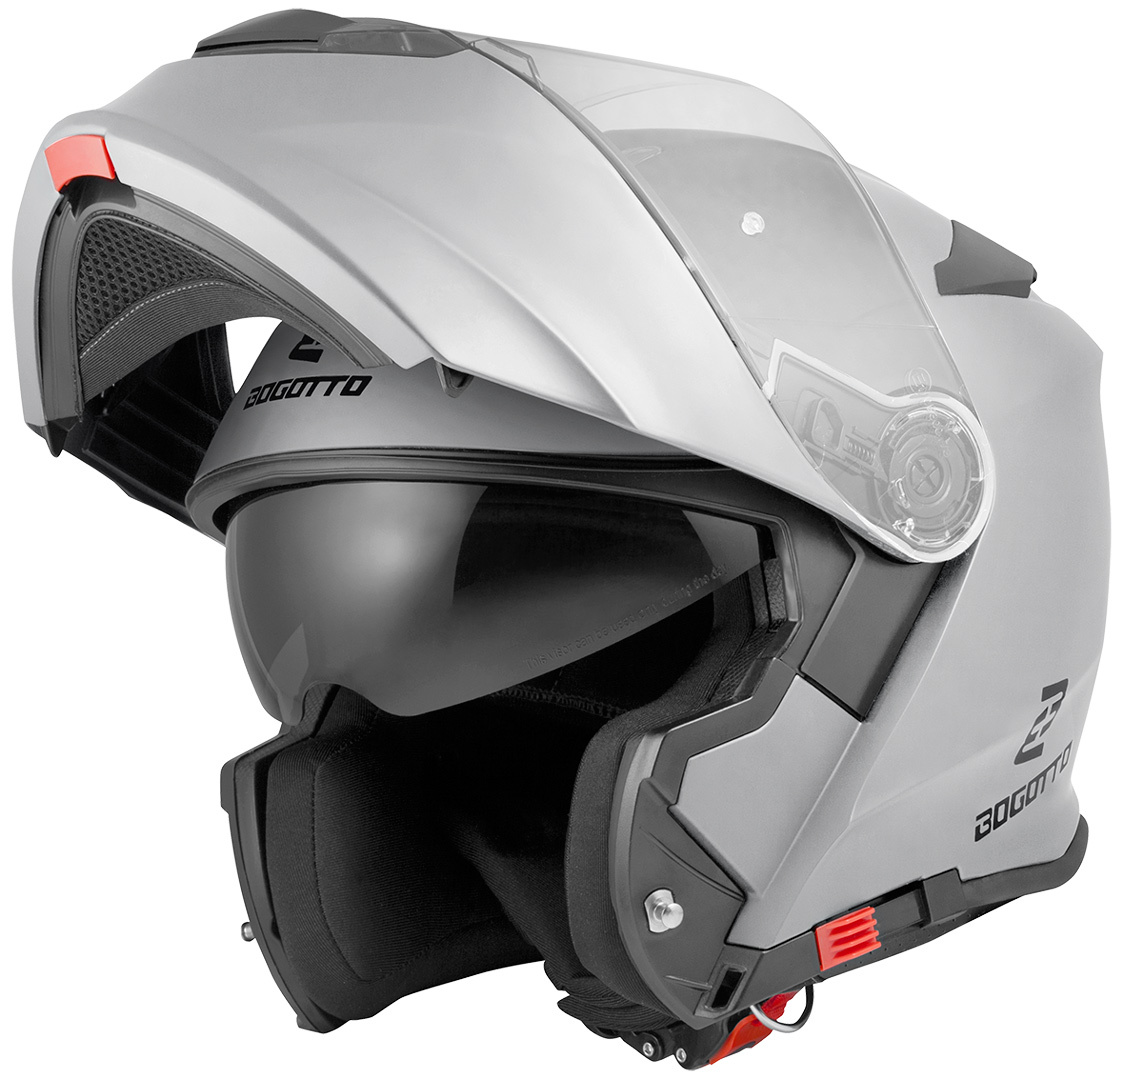 Мотоциклетный шлем Bogotto V271 с логотипом, серебристый мотоциклетный шлем со светодиодной подсветкой